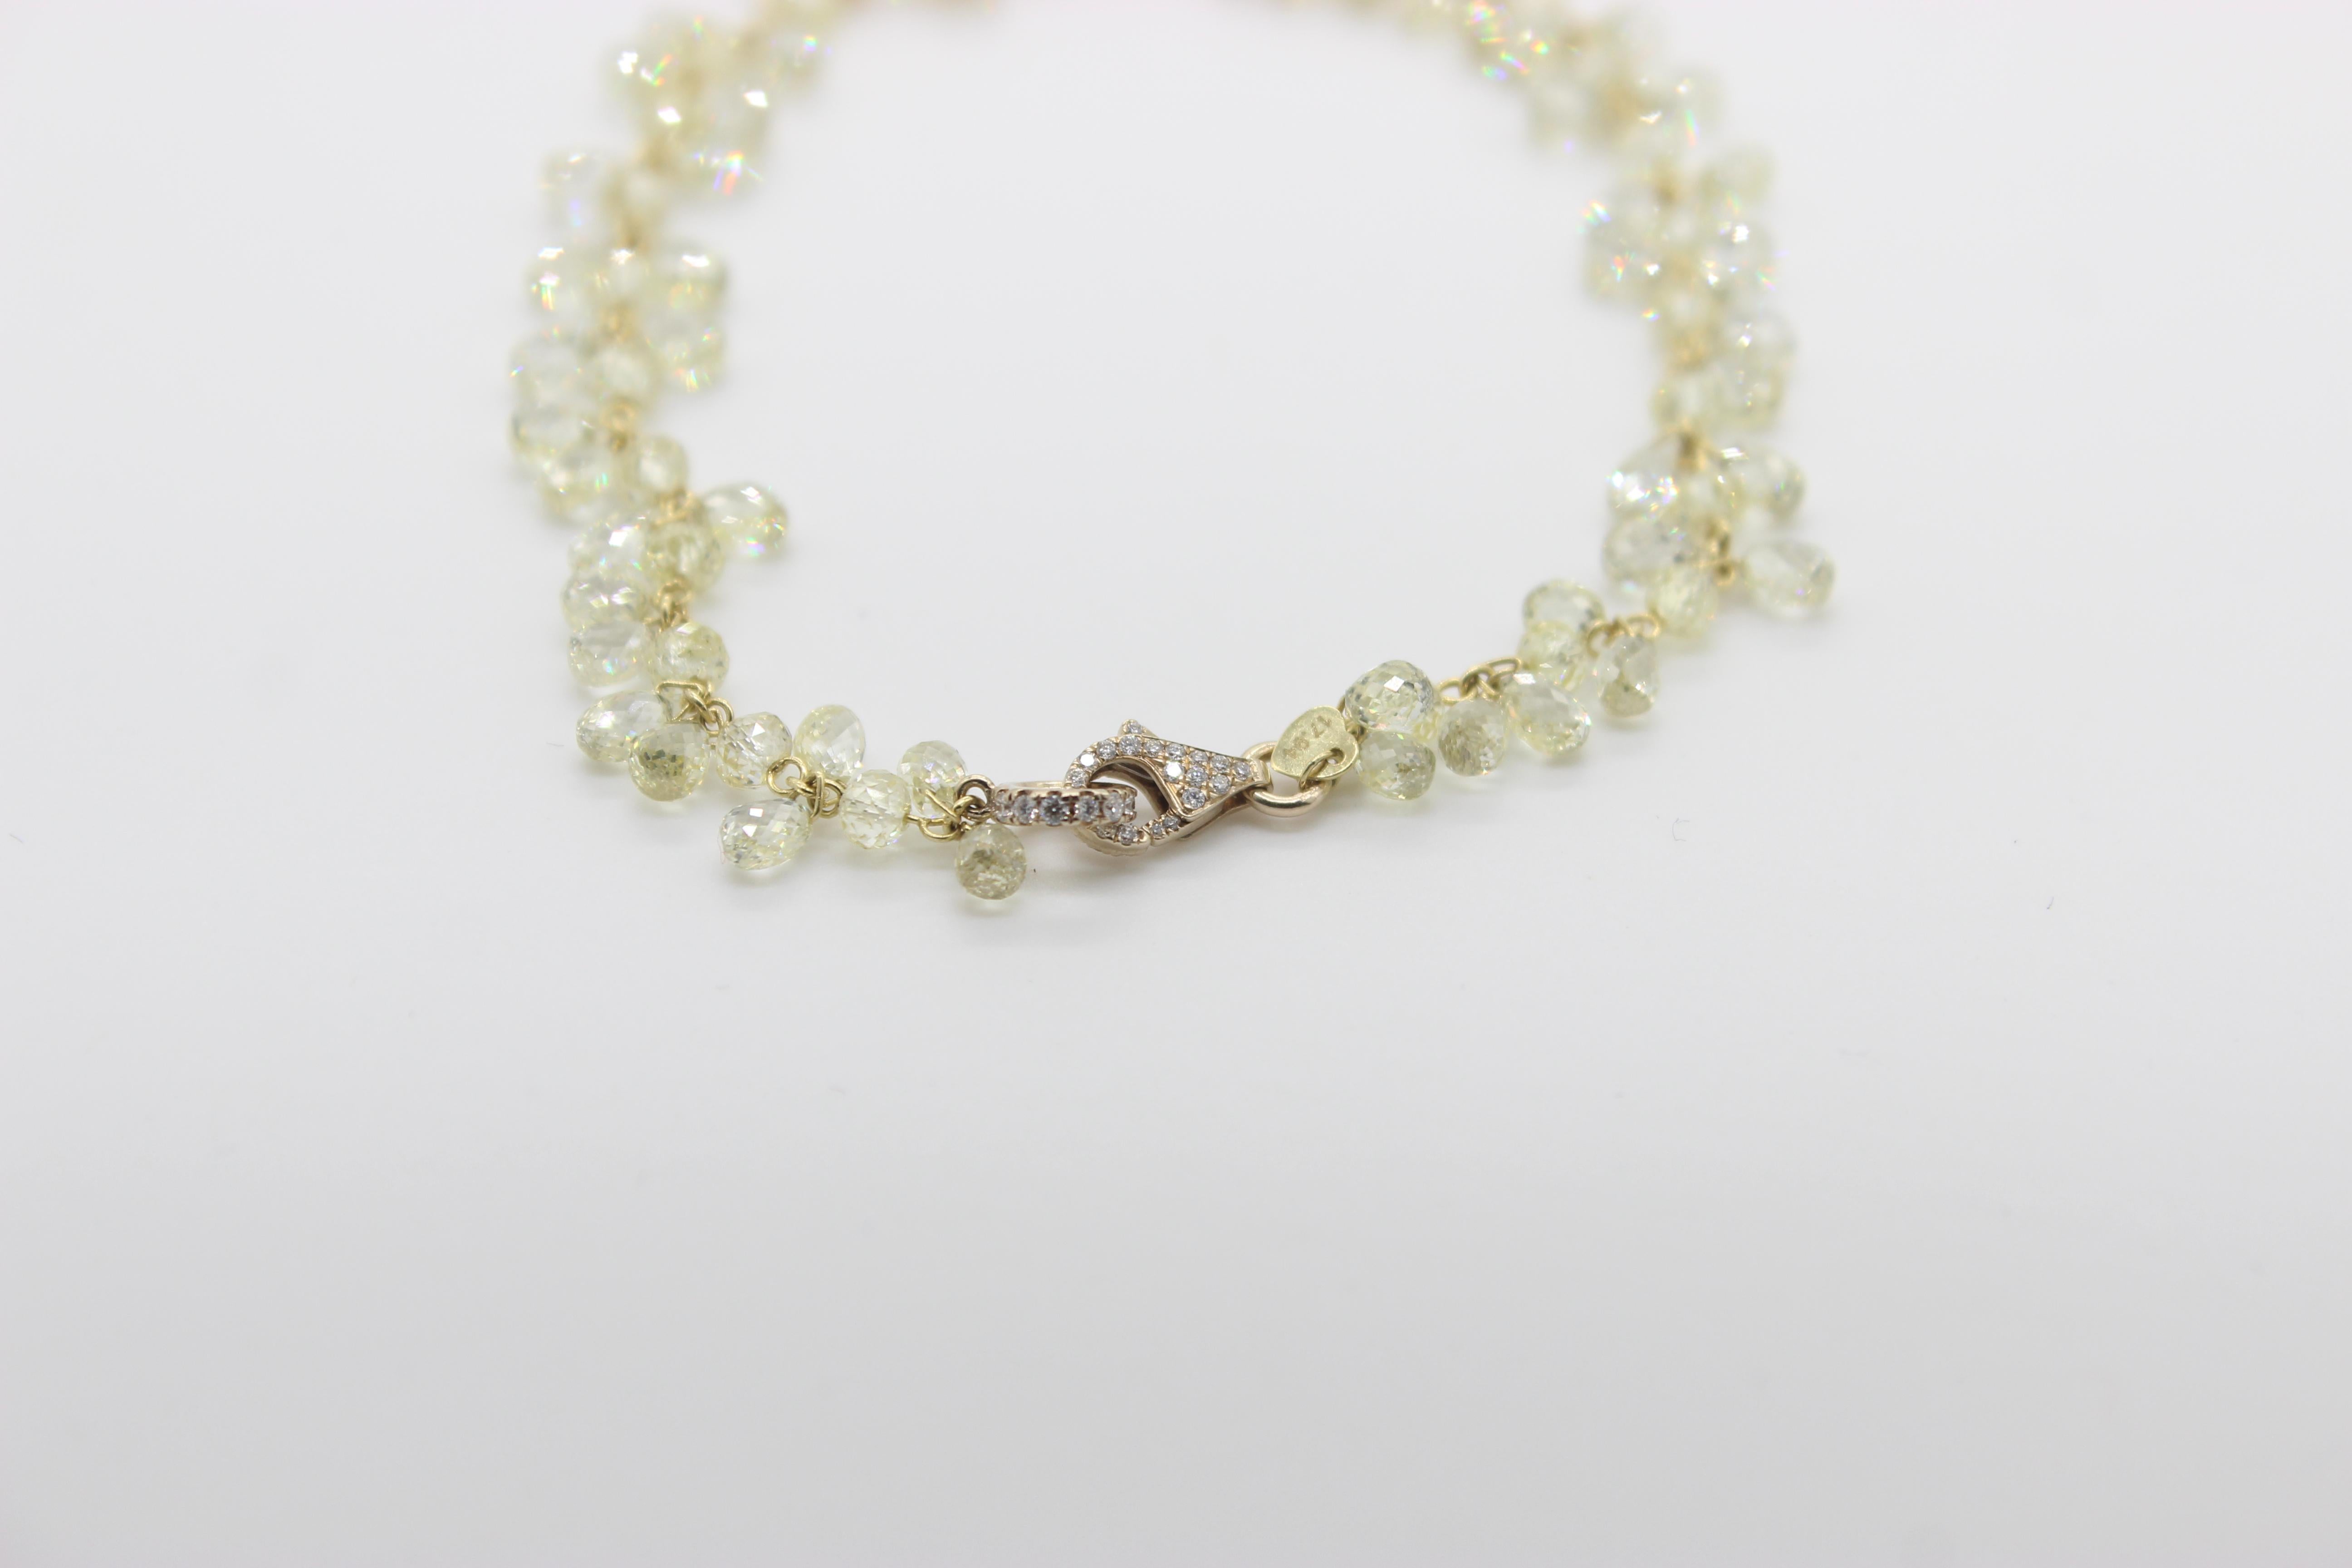 PANIM  Bracelet fleuri en or jaune avec briolette à 12.71 diamants

CODE : BLT-0019

12,71 carats de diamants blancs taillés en briolette dans une combinaison de briolettes à une et deux faces, sertis dans un bracelet en or jaune 18 carats pesant au